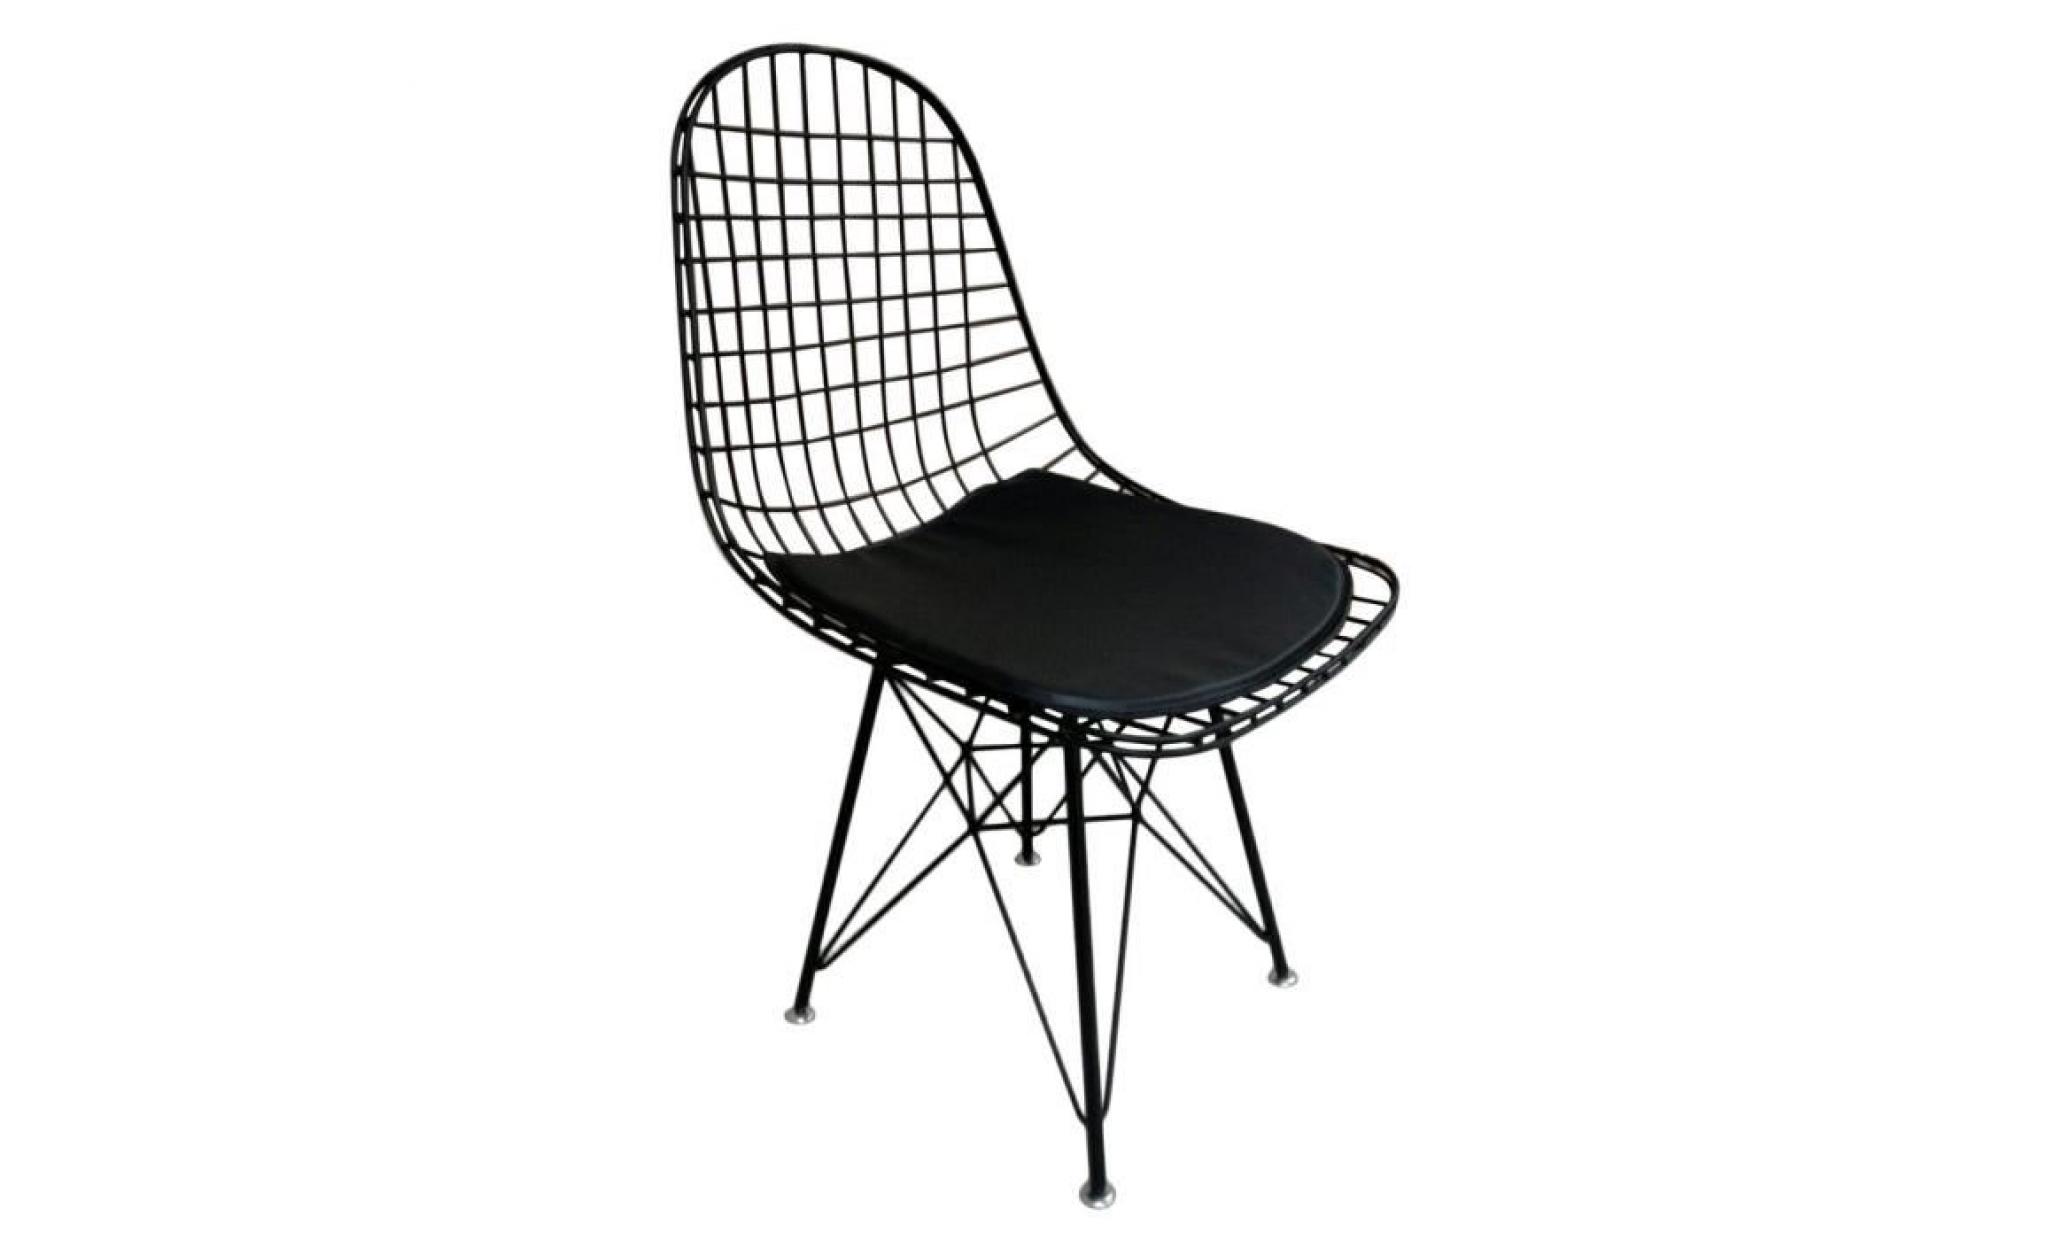 chaise eames inspiré confortable noir métal treillis métallique chaise À manger intérieur chaise lounge restaurant bureau maison déc pas cher